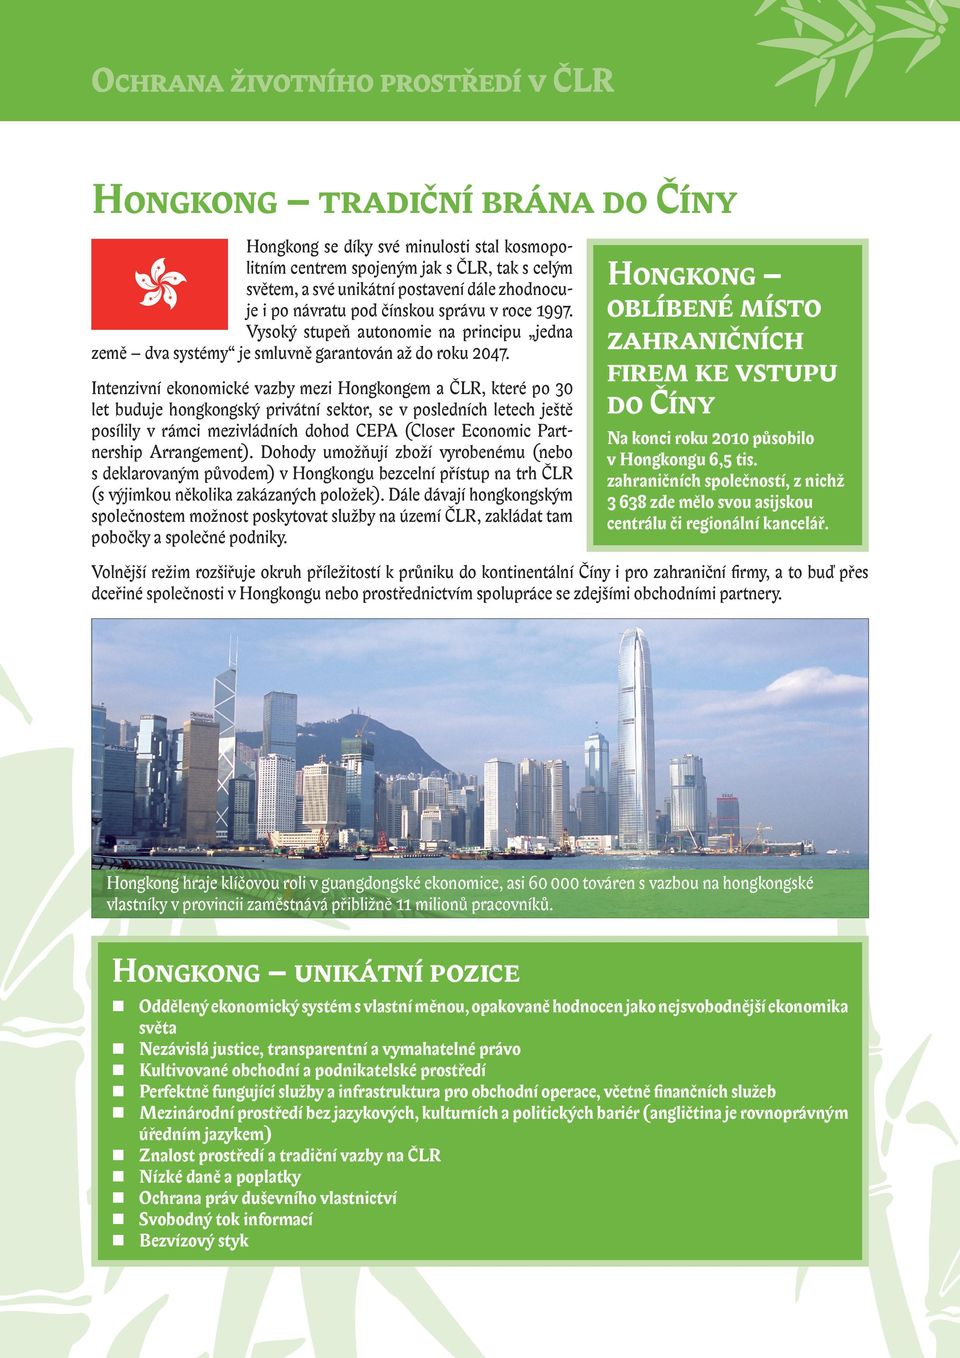 Intenzivní ekonomické vazby mezi Hongkongem a ČLR, které po 30 let buduje hongkongský privátní sektor, se v posledních letech ještě posílily v rámci mezivládních dohod CEPA (Closer Economic